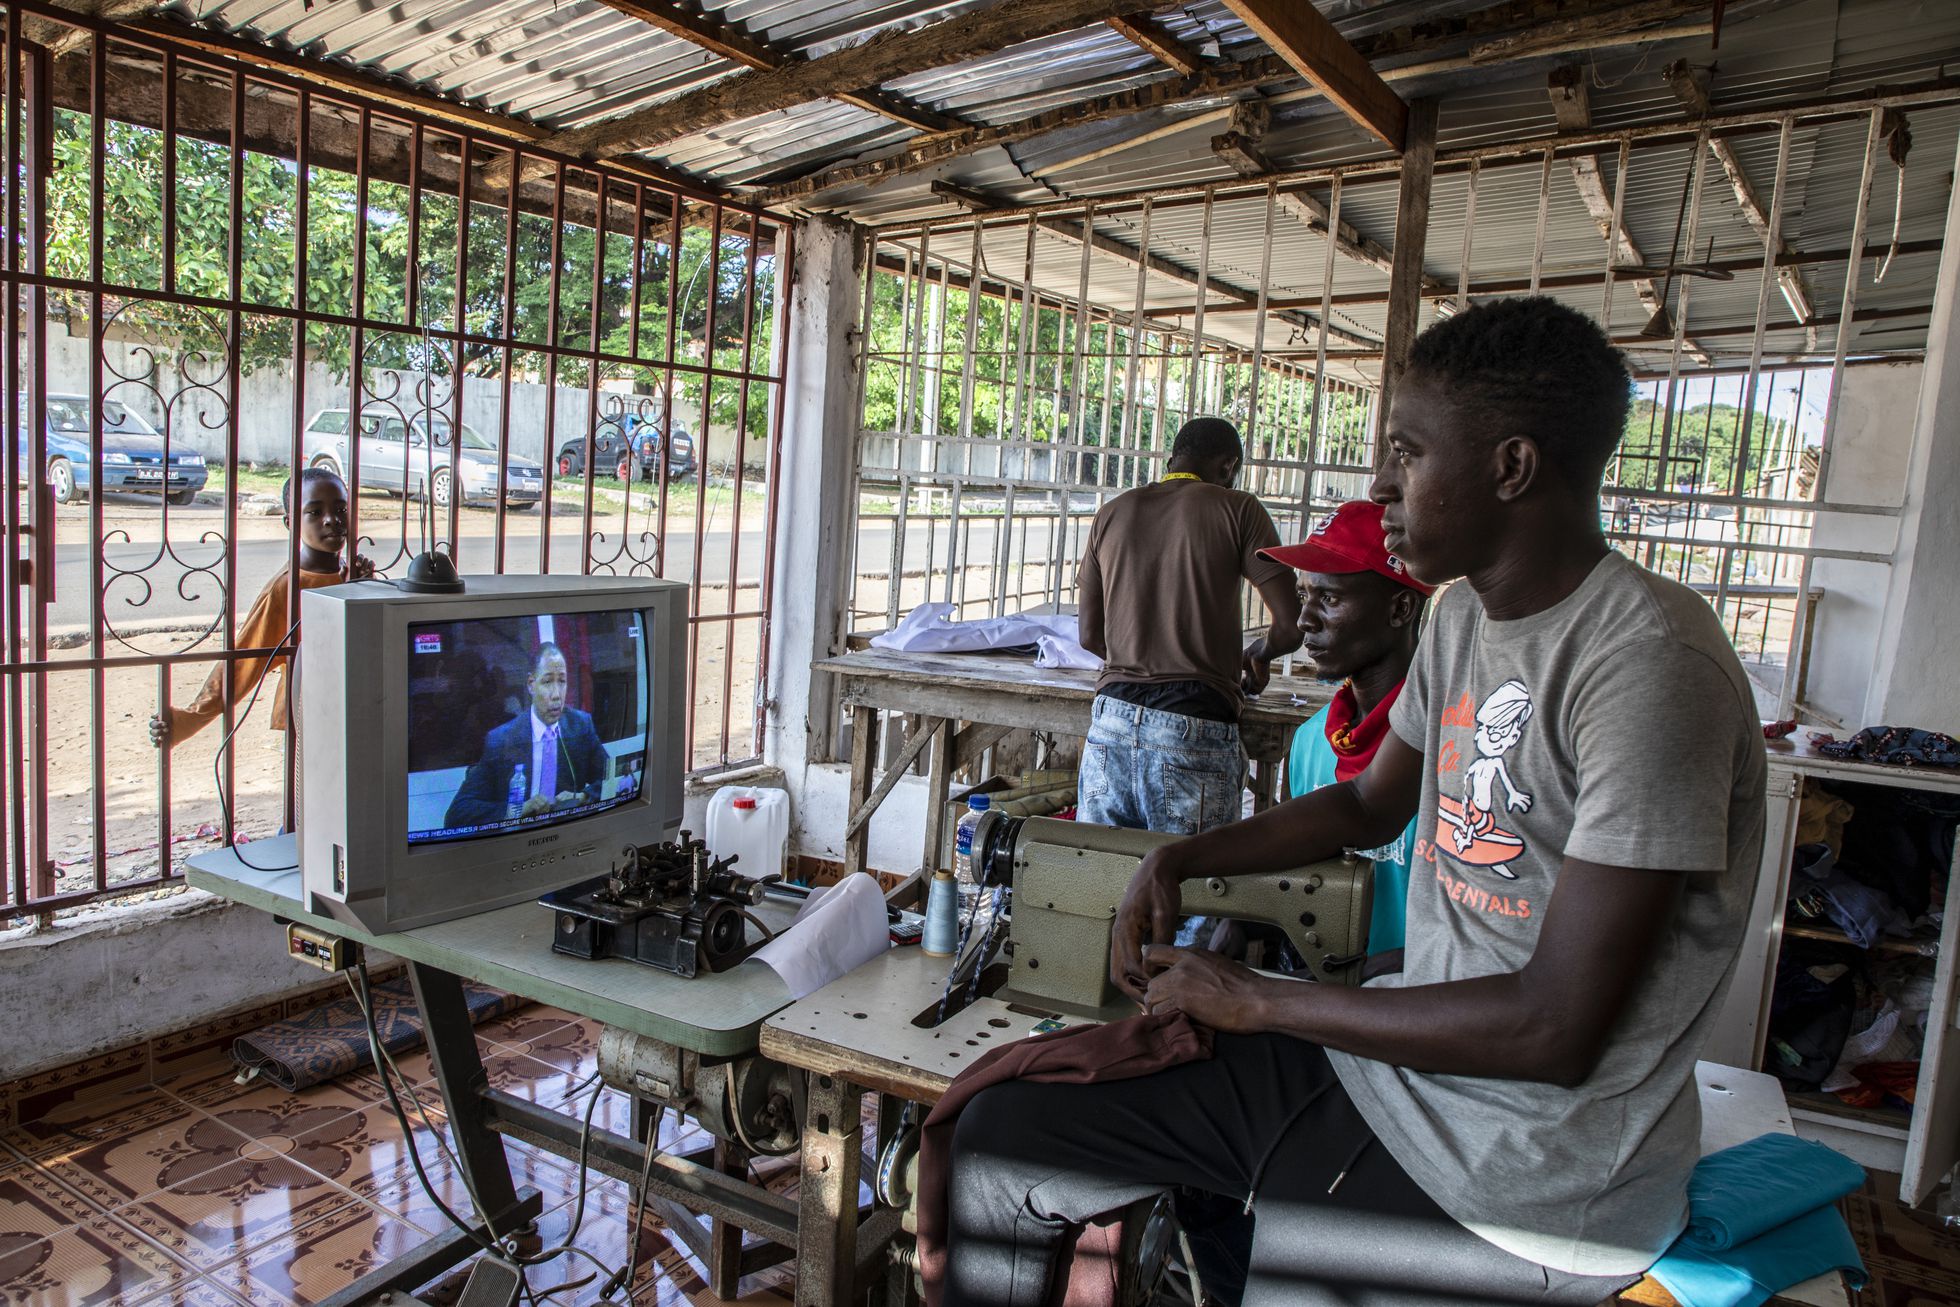 Las sesiones de la Comisión de la Verdad, la Reconciliación y las Reparaciones se retransmiten en directo por televisión y son seguidas cada día por decenas de miles de gambianos que escuchan entre el asombro y la indignación los relatos de víctimas y verdugos.